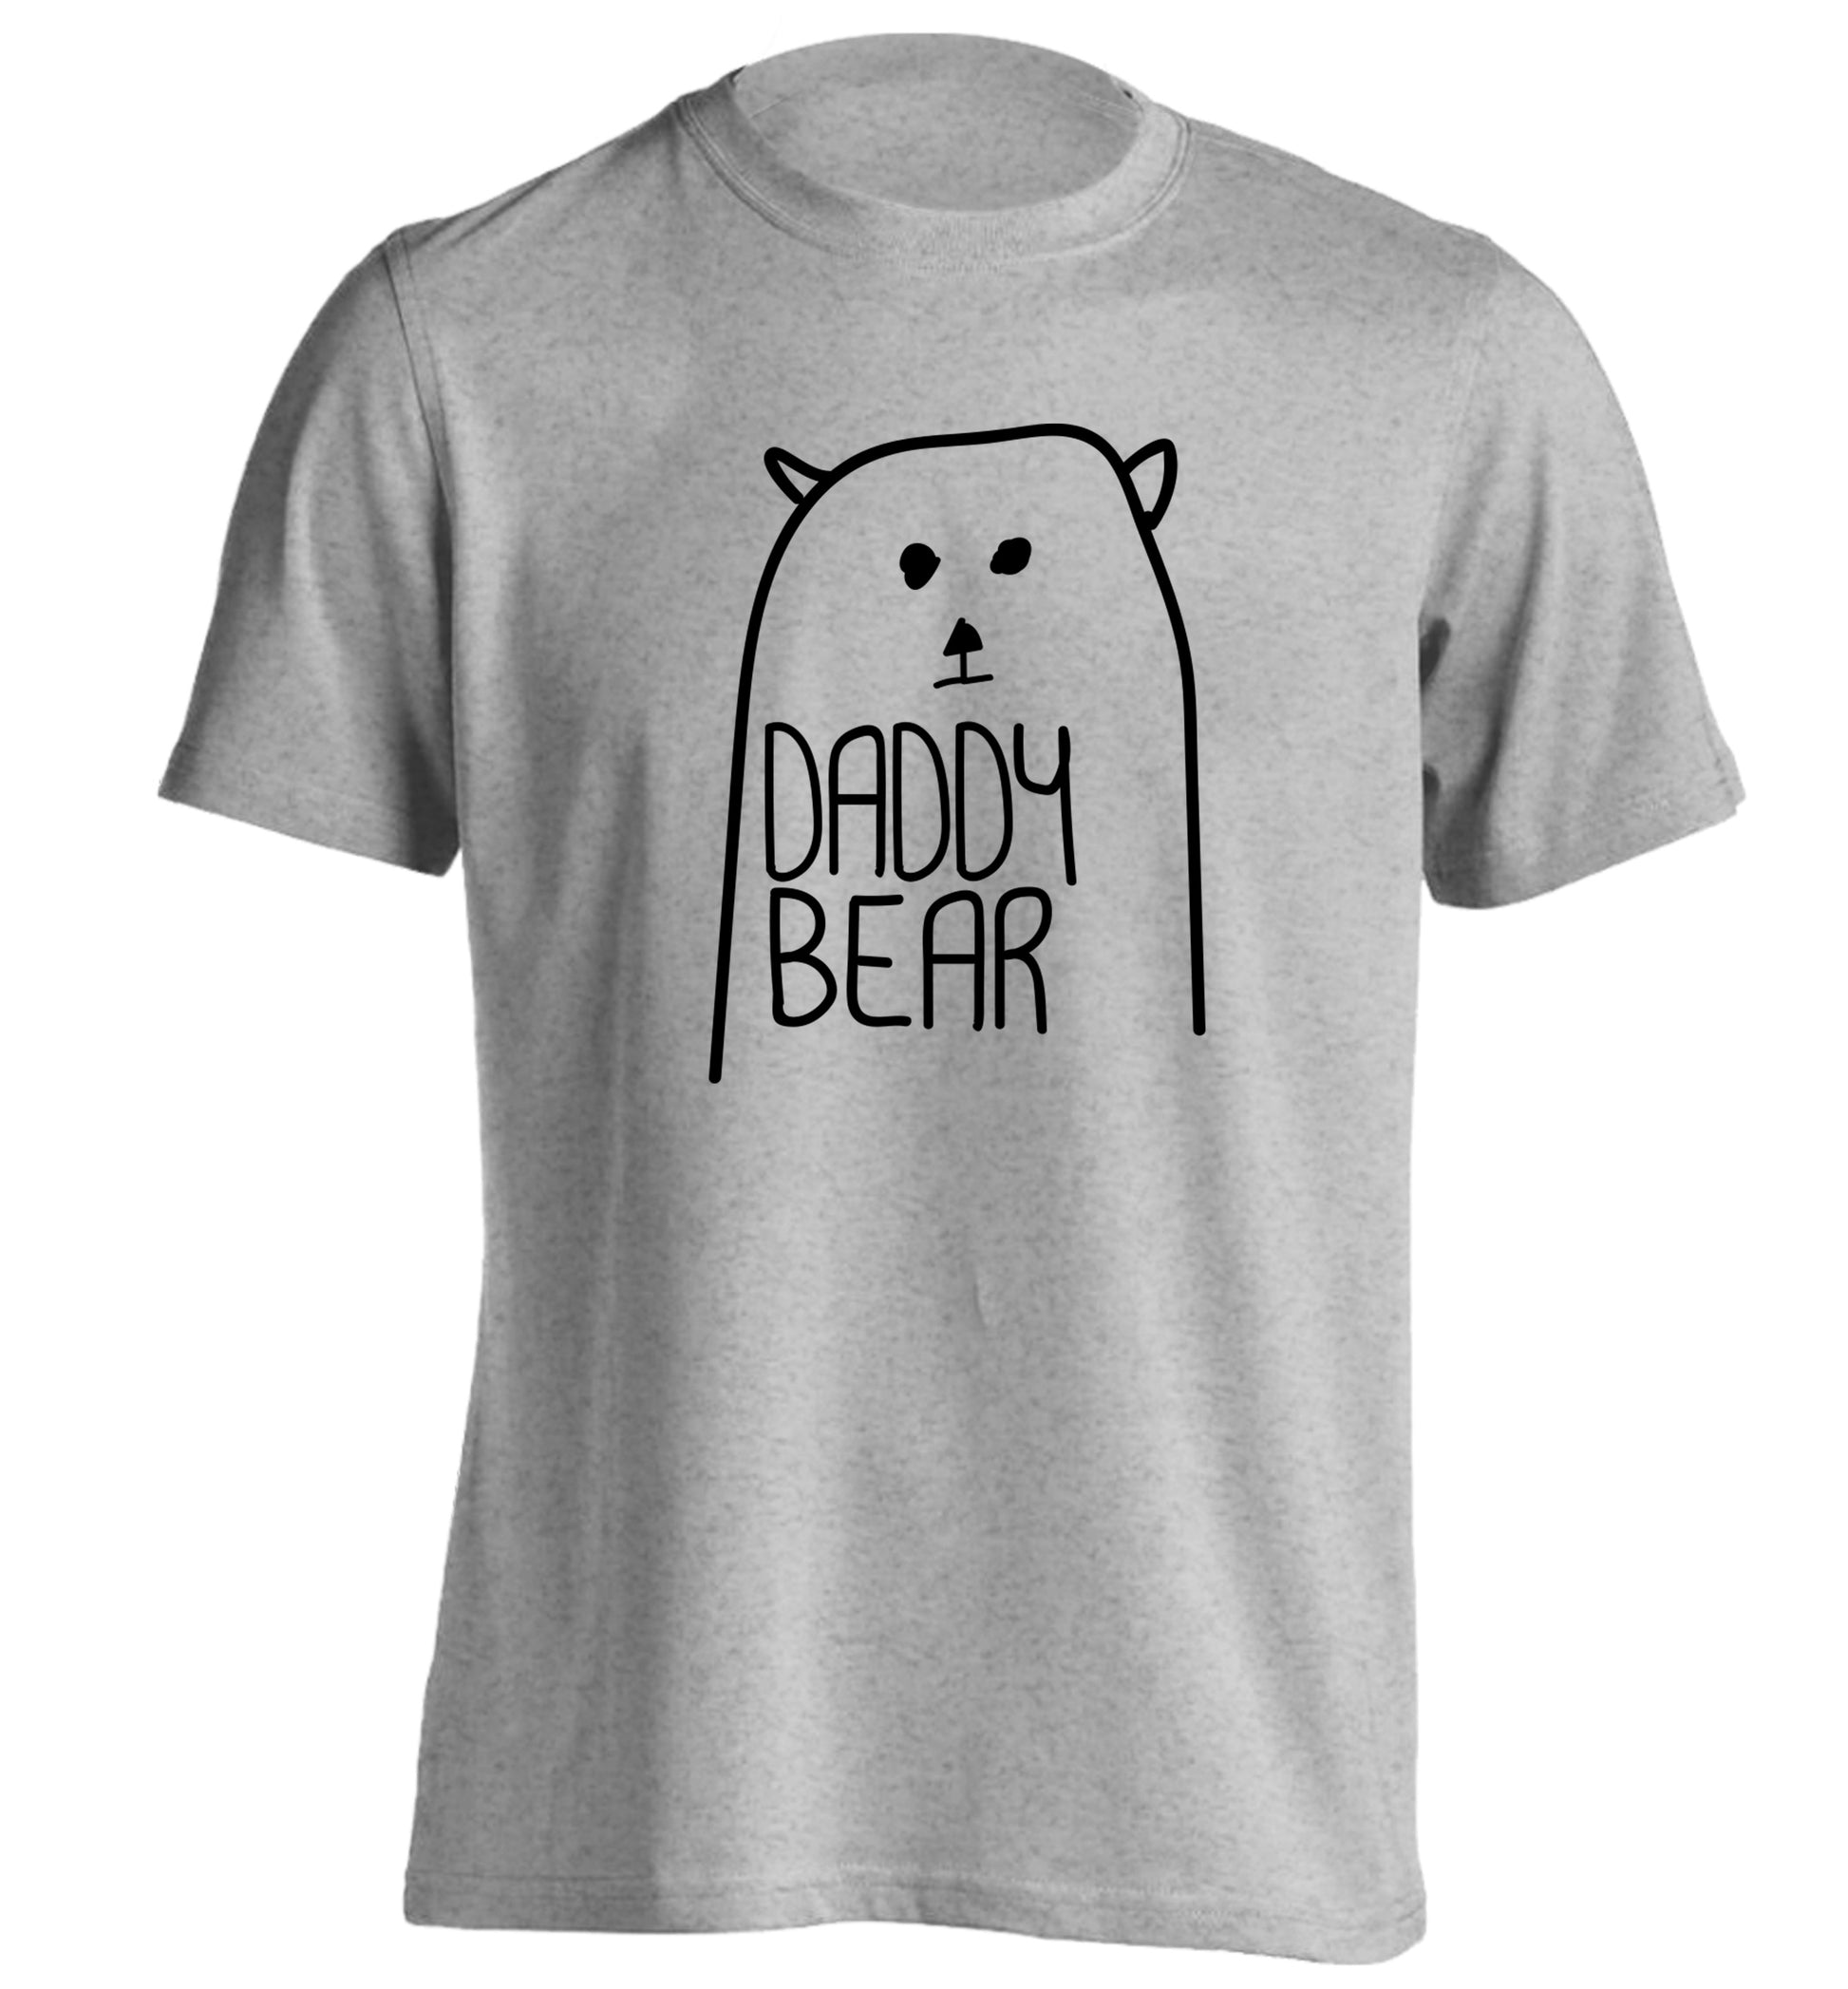 Daddy bear adults unisex grey Tshirt 2XL